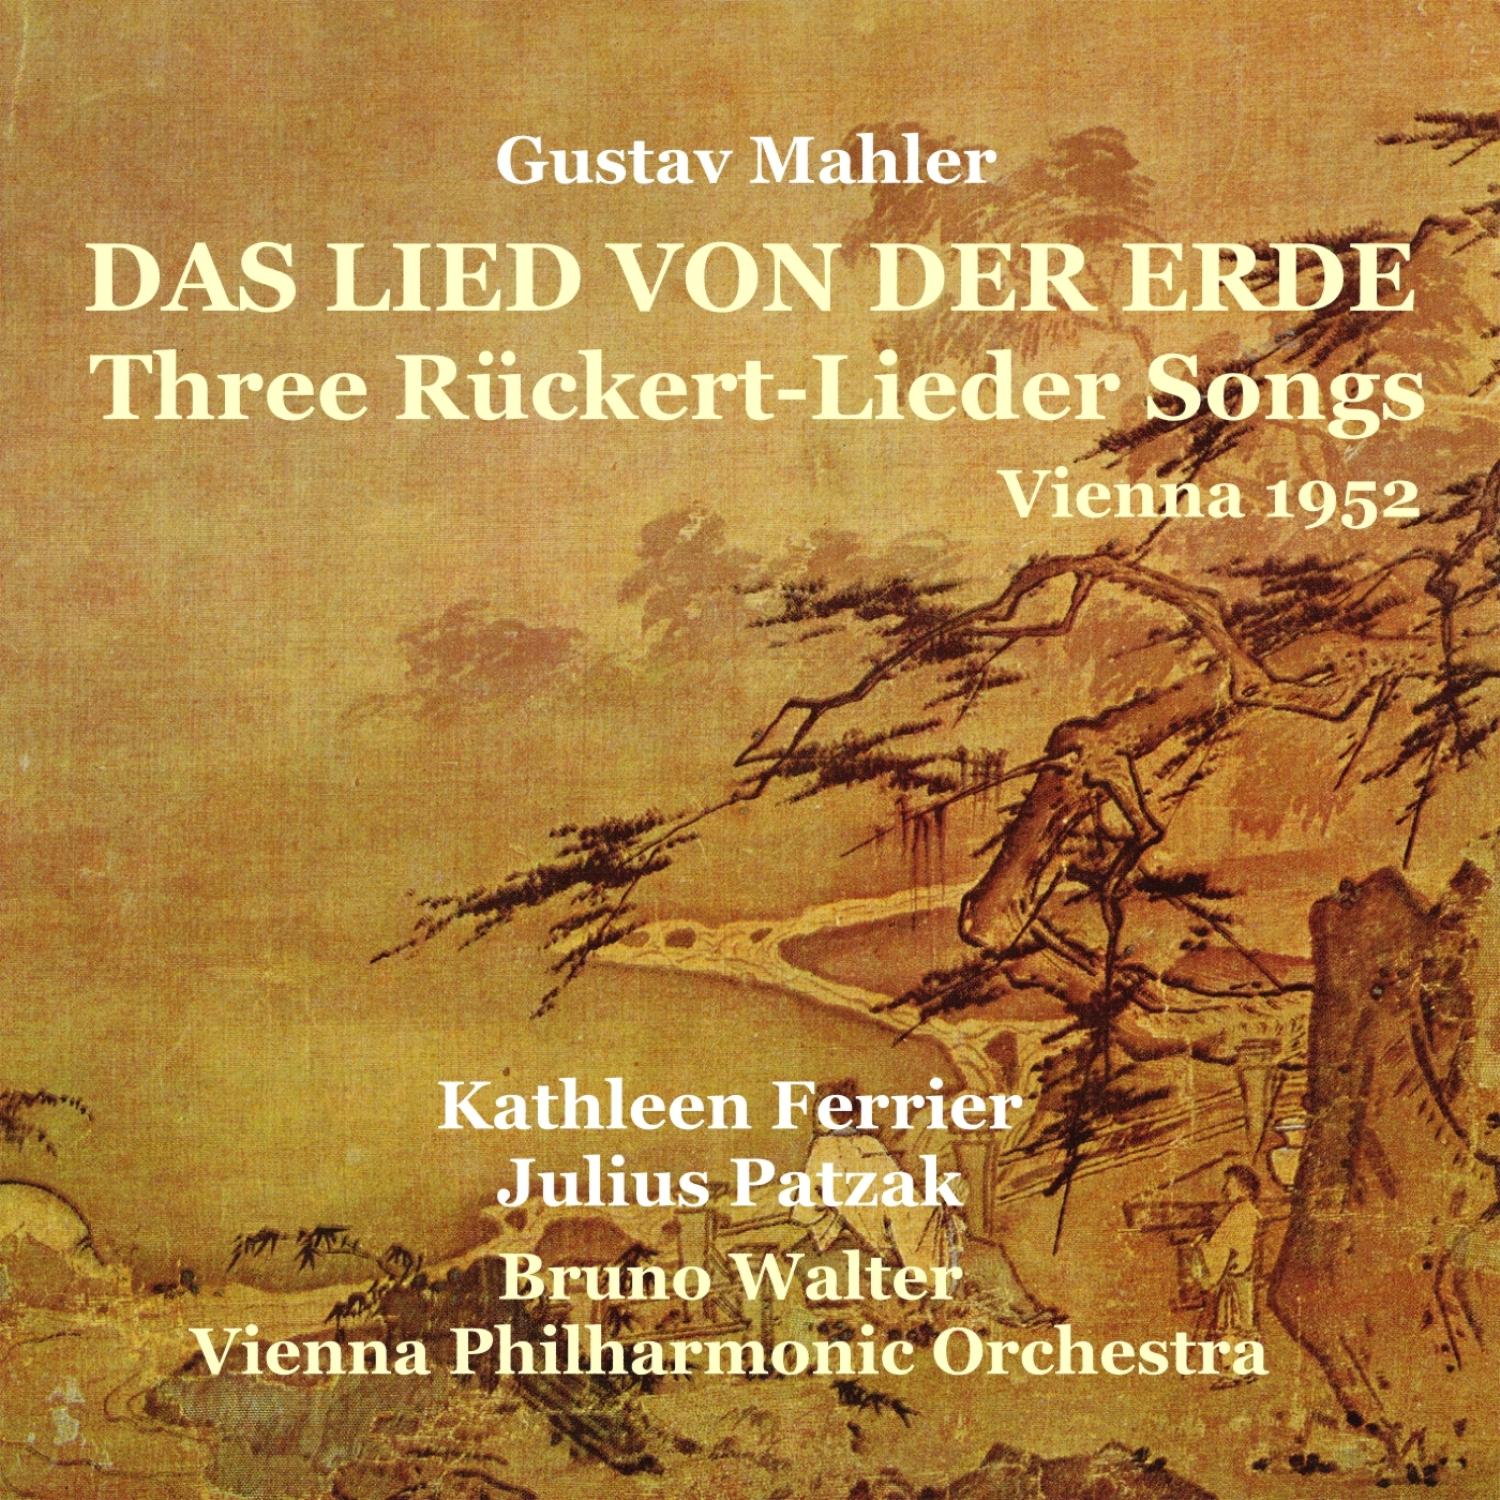 Mahler: Das Lied von der Erde, Three Rü ckertLieder Songs 1952